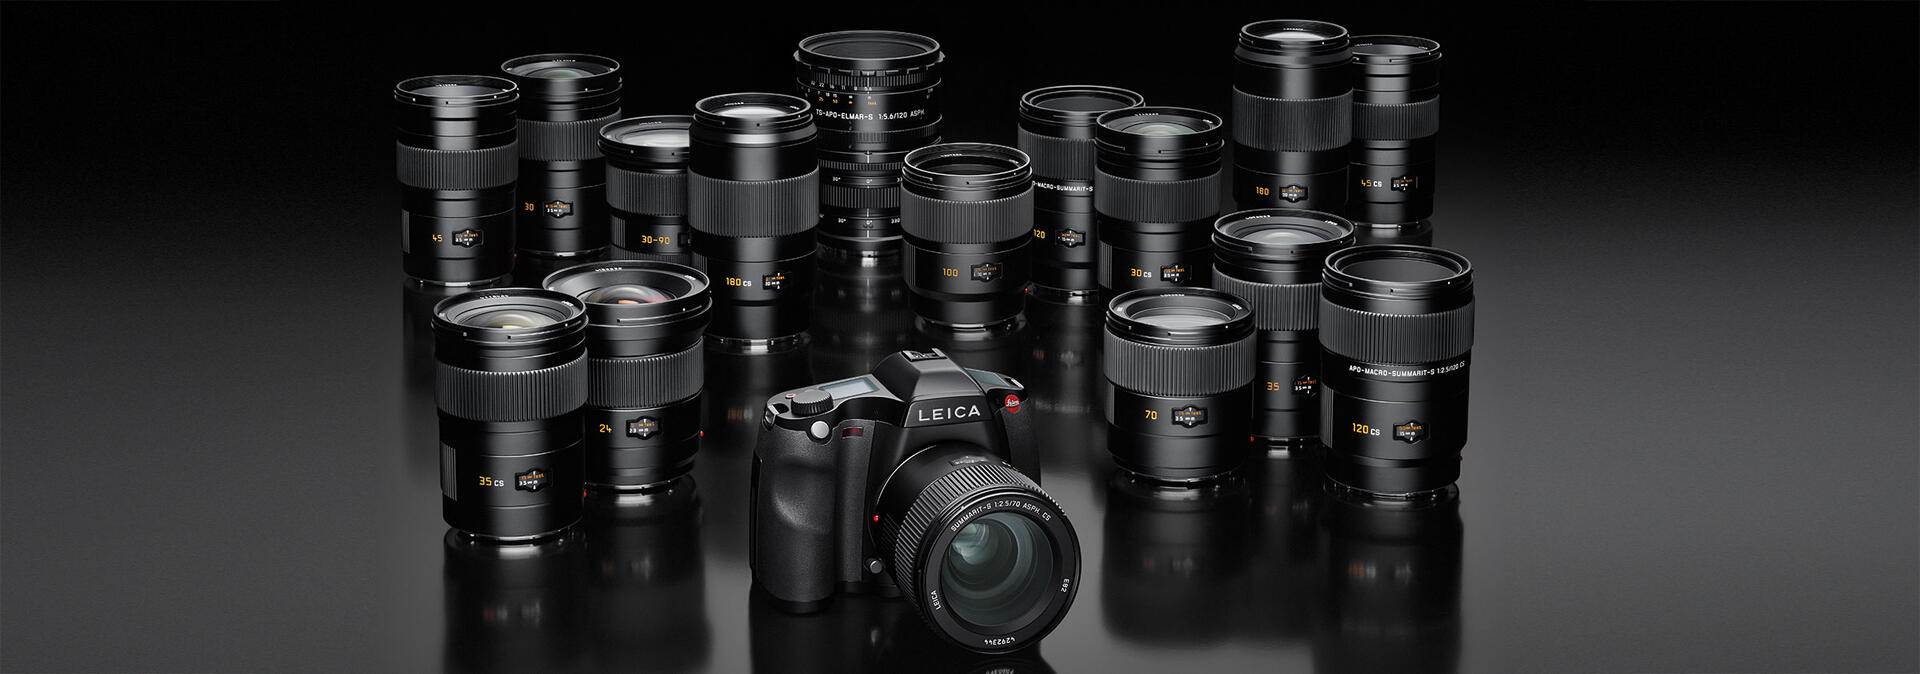 Leica S-System | Leica Camera AG